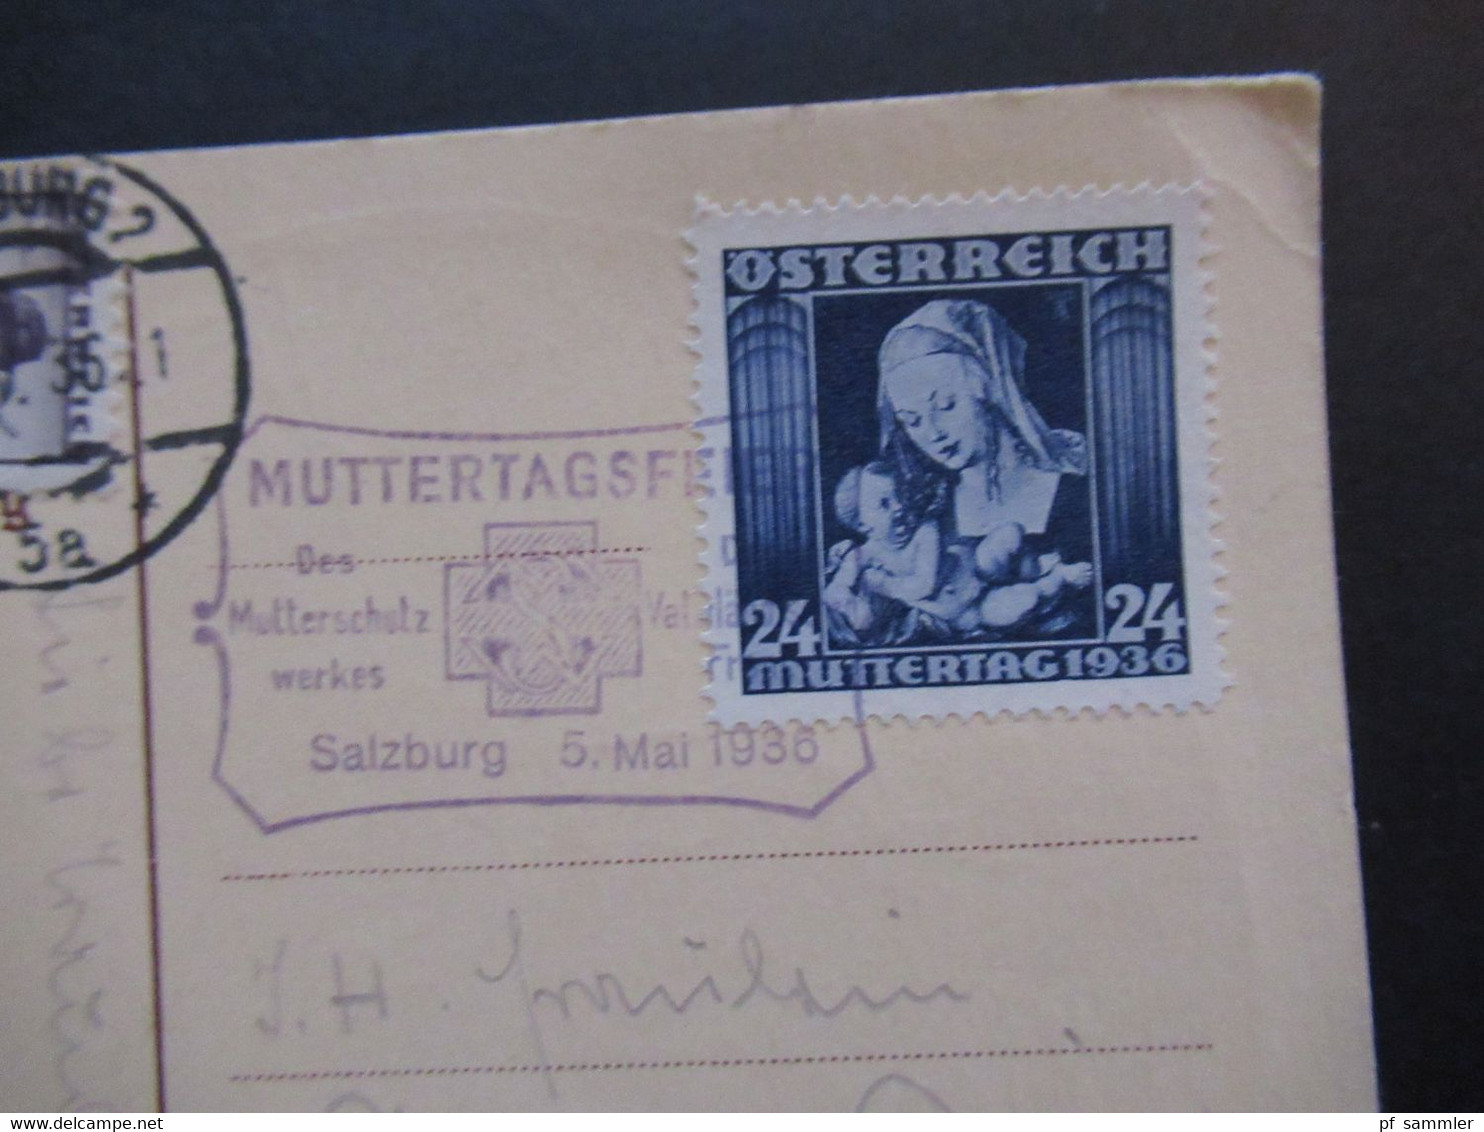 Österreich 1936 Muttertag Nr. 627 SST Mutterschutzwerk FDC Künstler AK Mein Kind Mit Einem Gedicht. In Die CSR Gesendet - Lettres & Documents